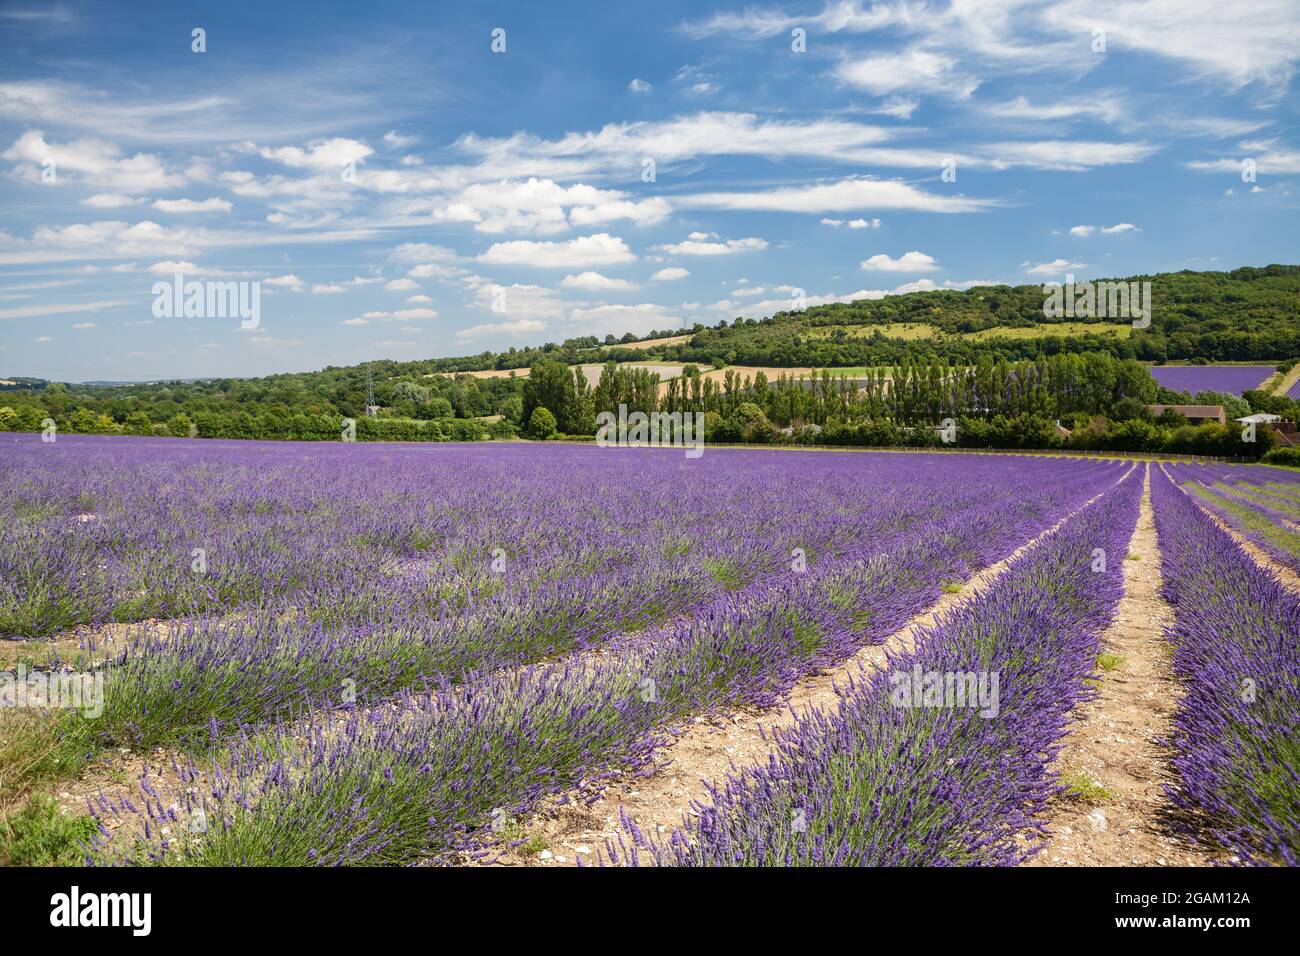 Castle Farm Lavender fields in Kent, UK. Stock Photo